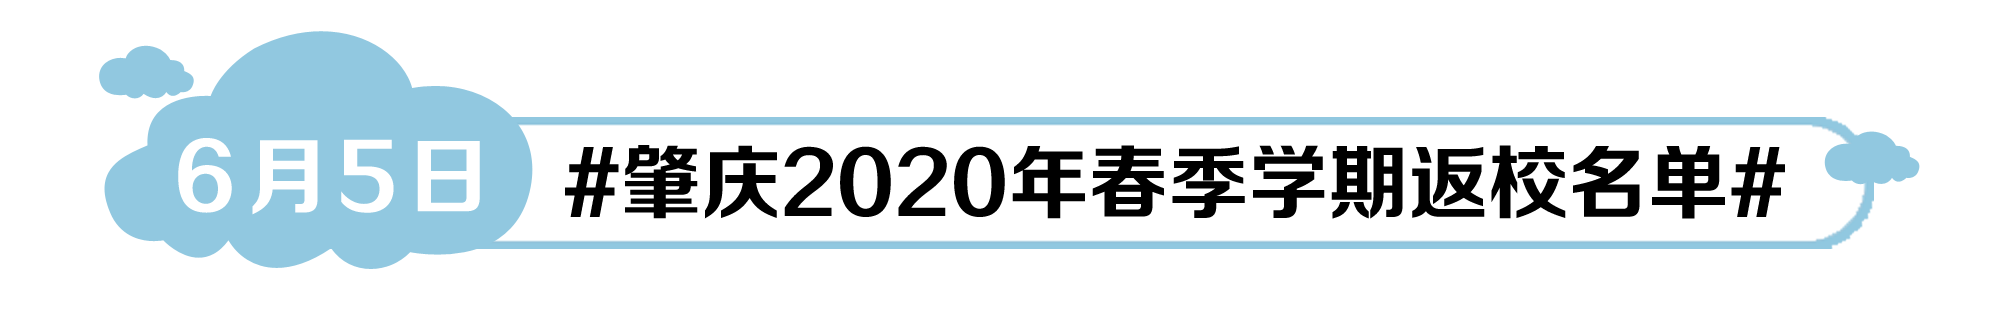 肇庆2020年春季学期返校名单.png